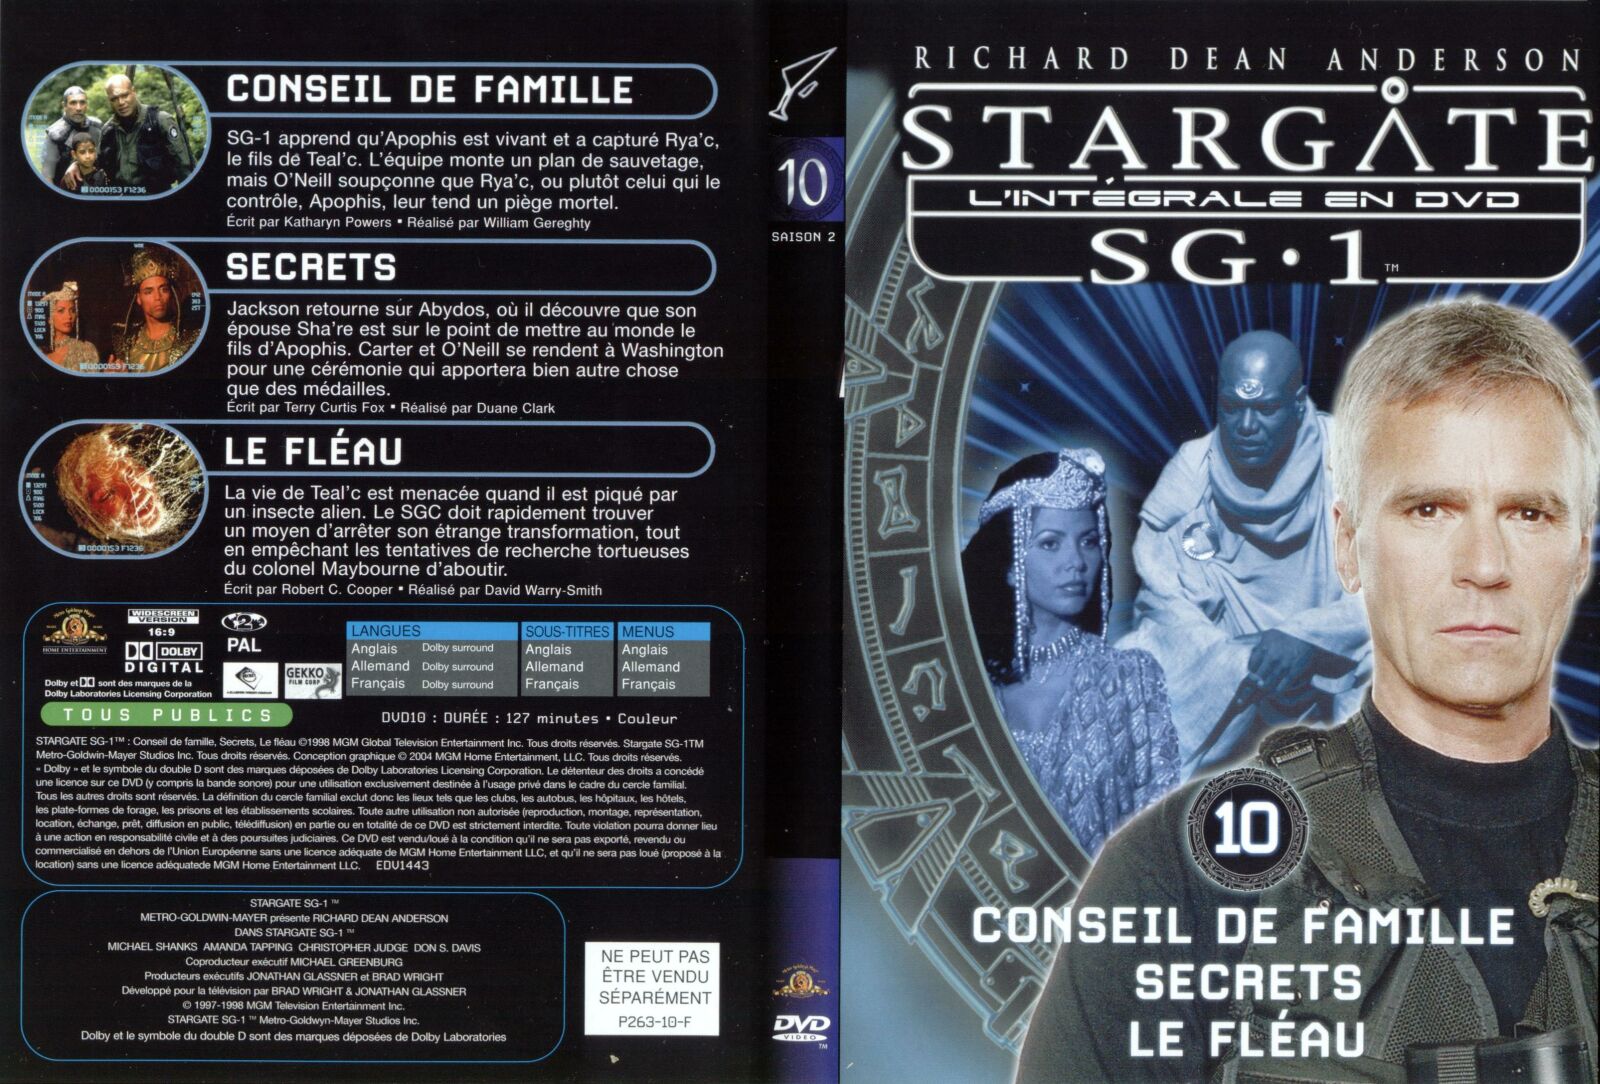 Jaquette DVD Stargate saison 2 vol 10